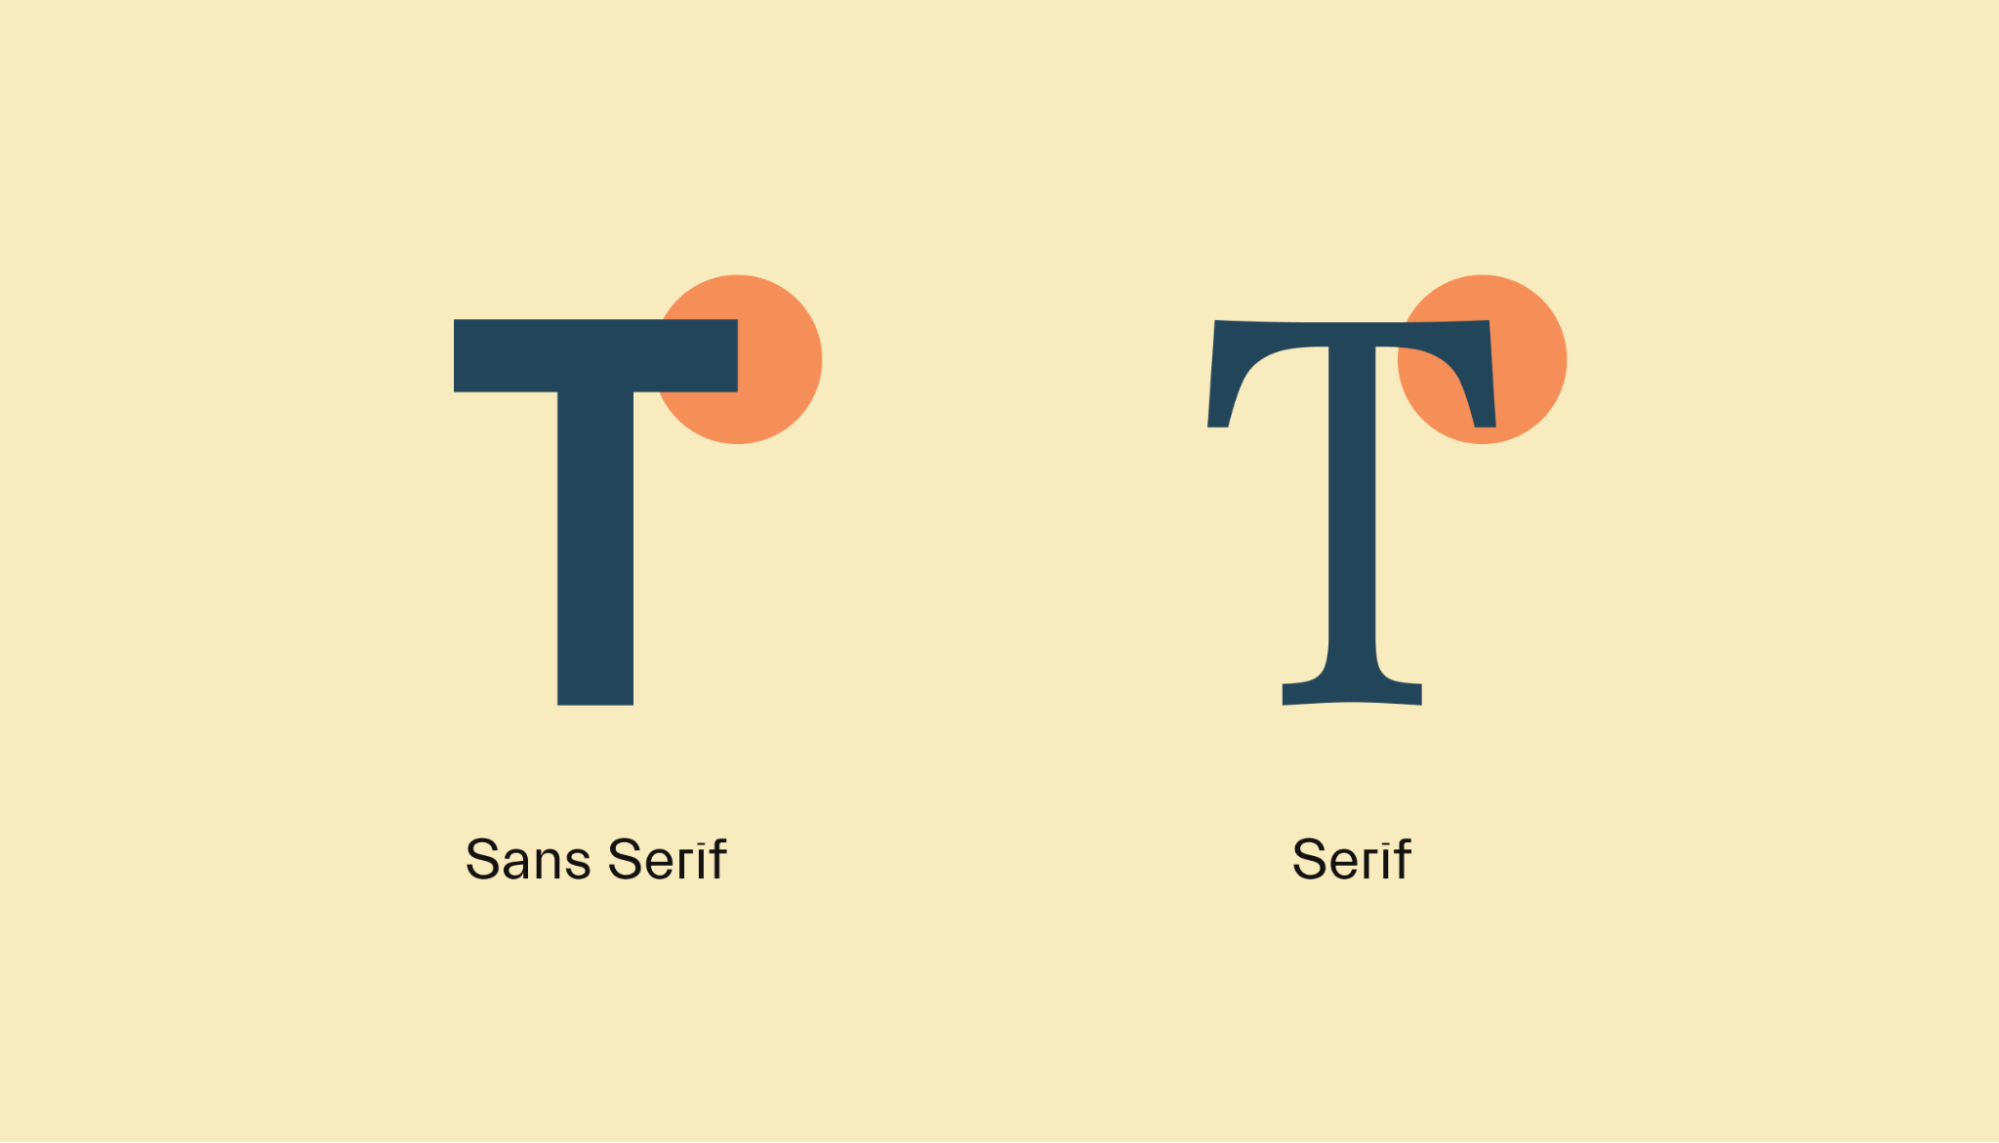 Serif vs